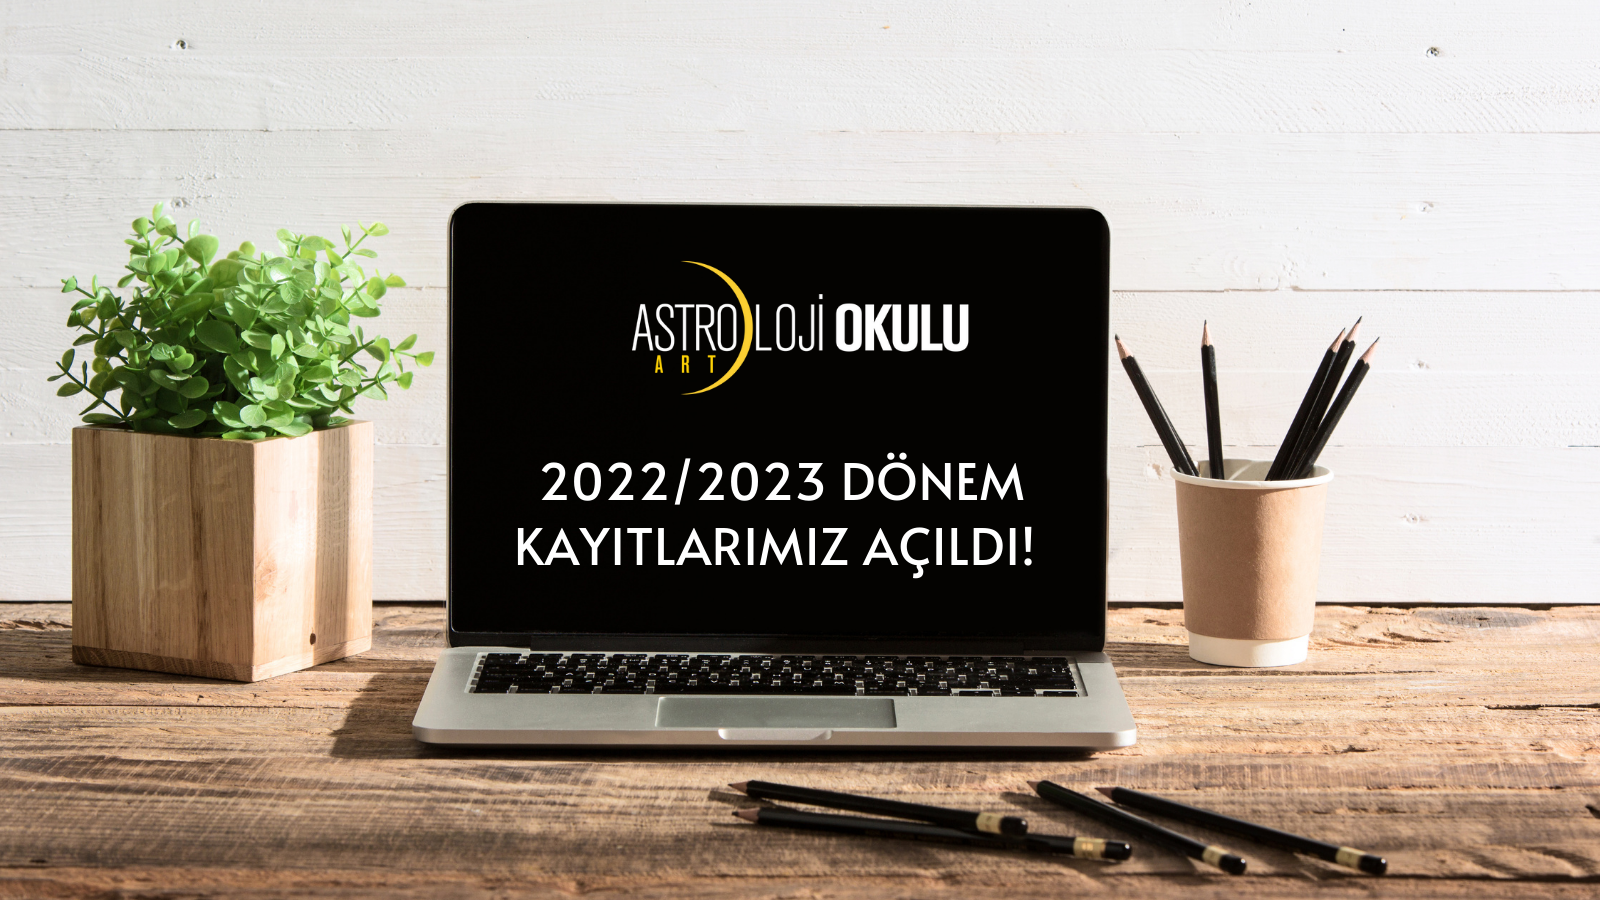 2022/2023 DÖNEM KAYITLARIMIZ AÇILDI!